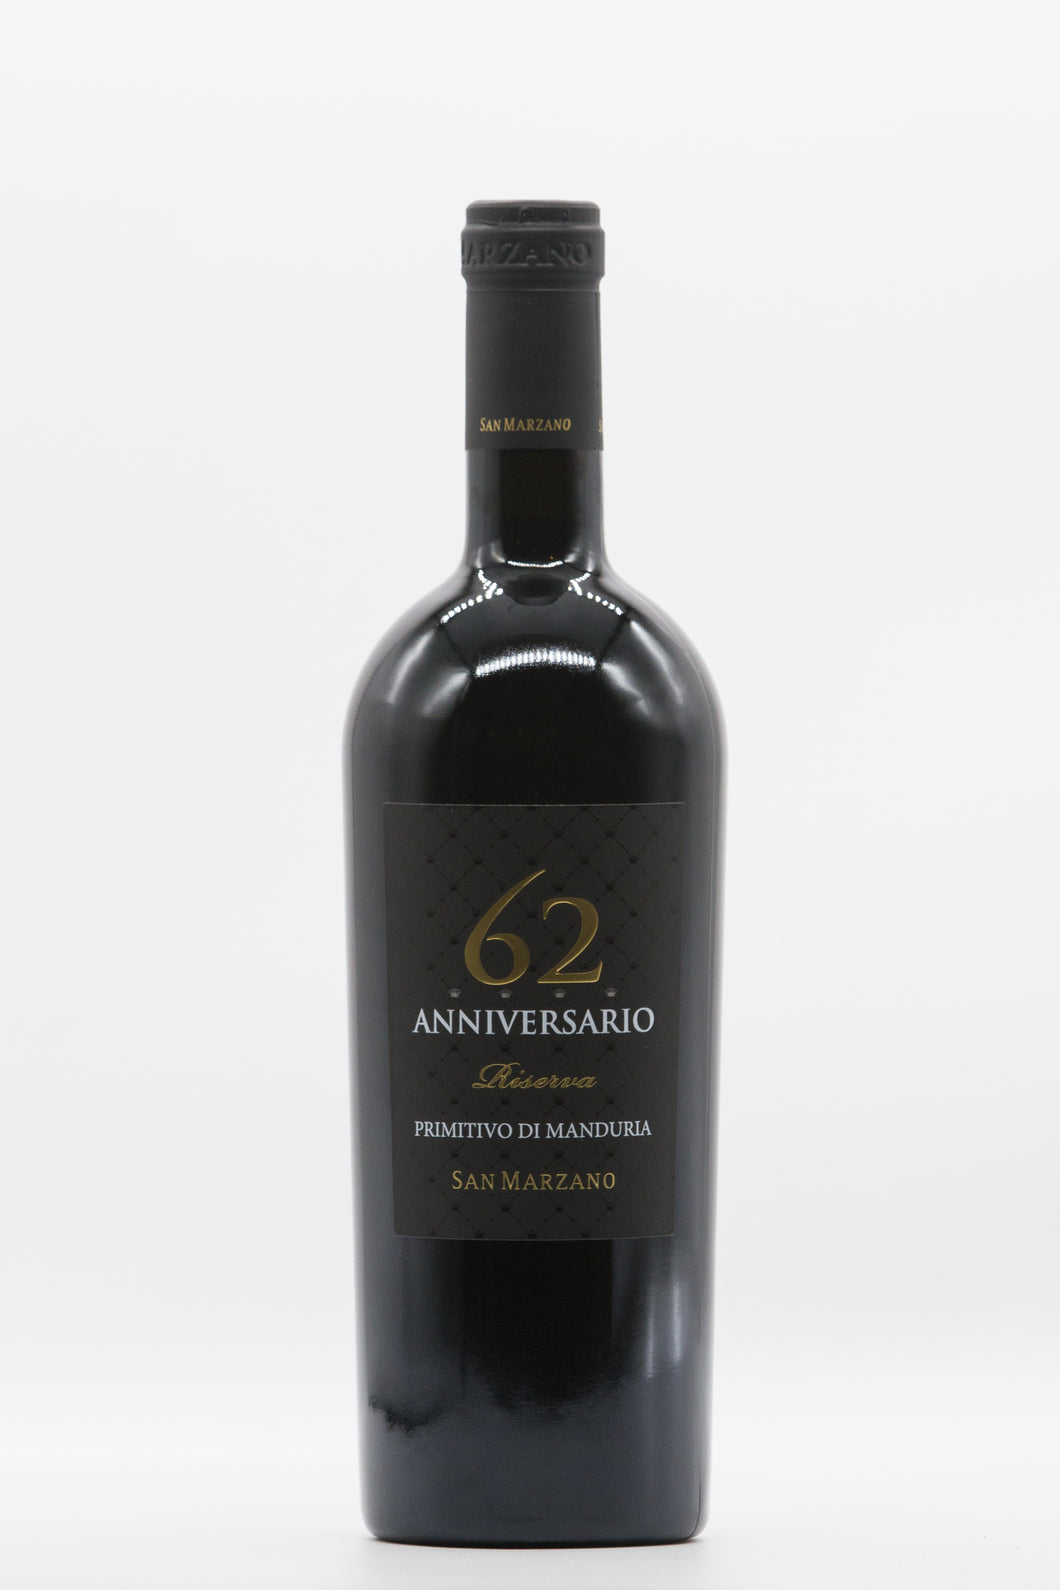 Wine bottle: San Marzano, Anniversario 62, Primitivo di Manduria Riserva 2017